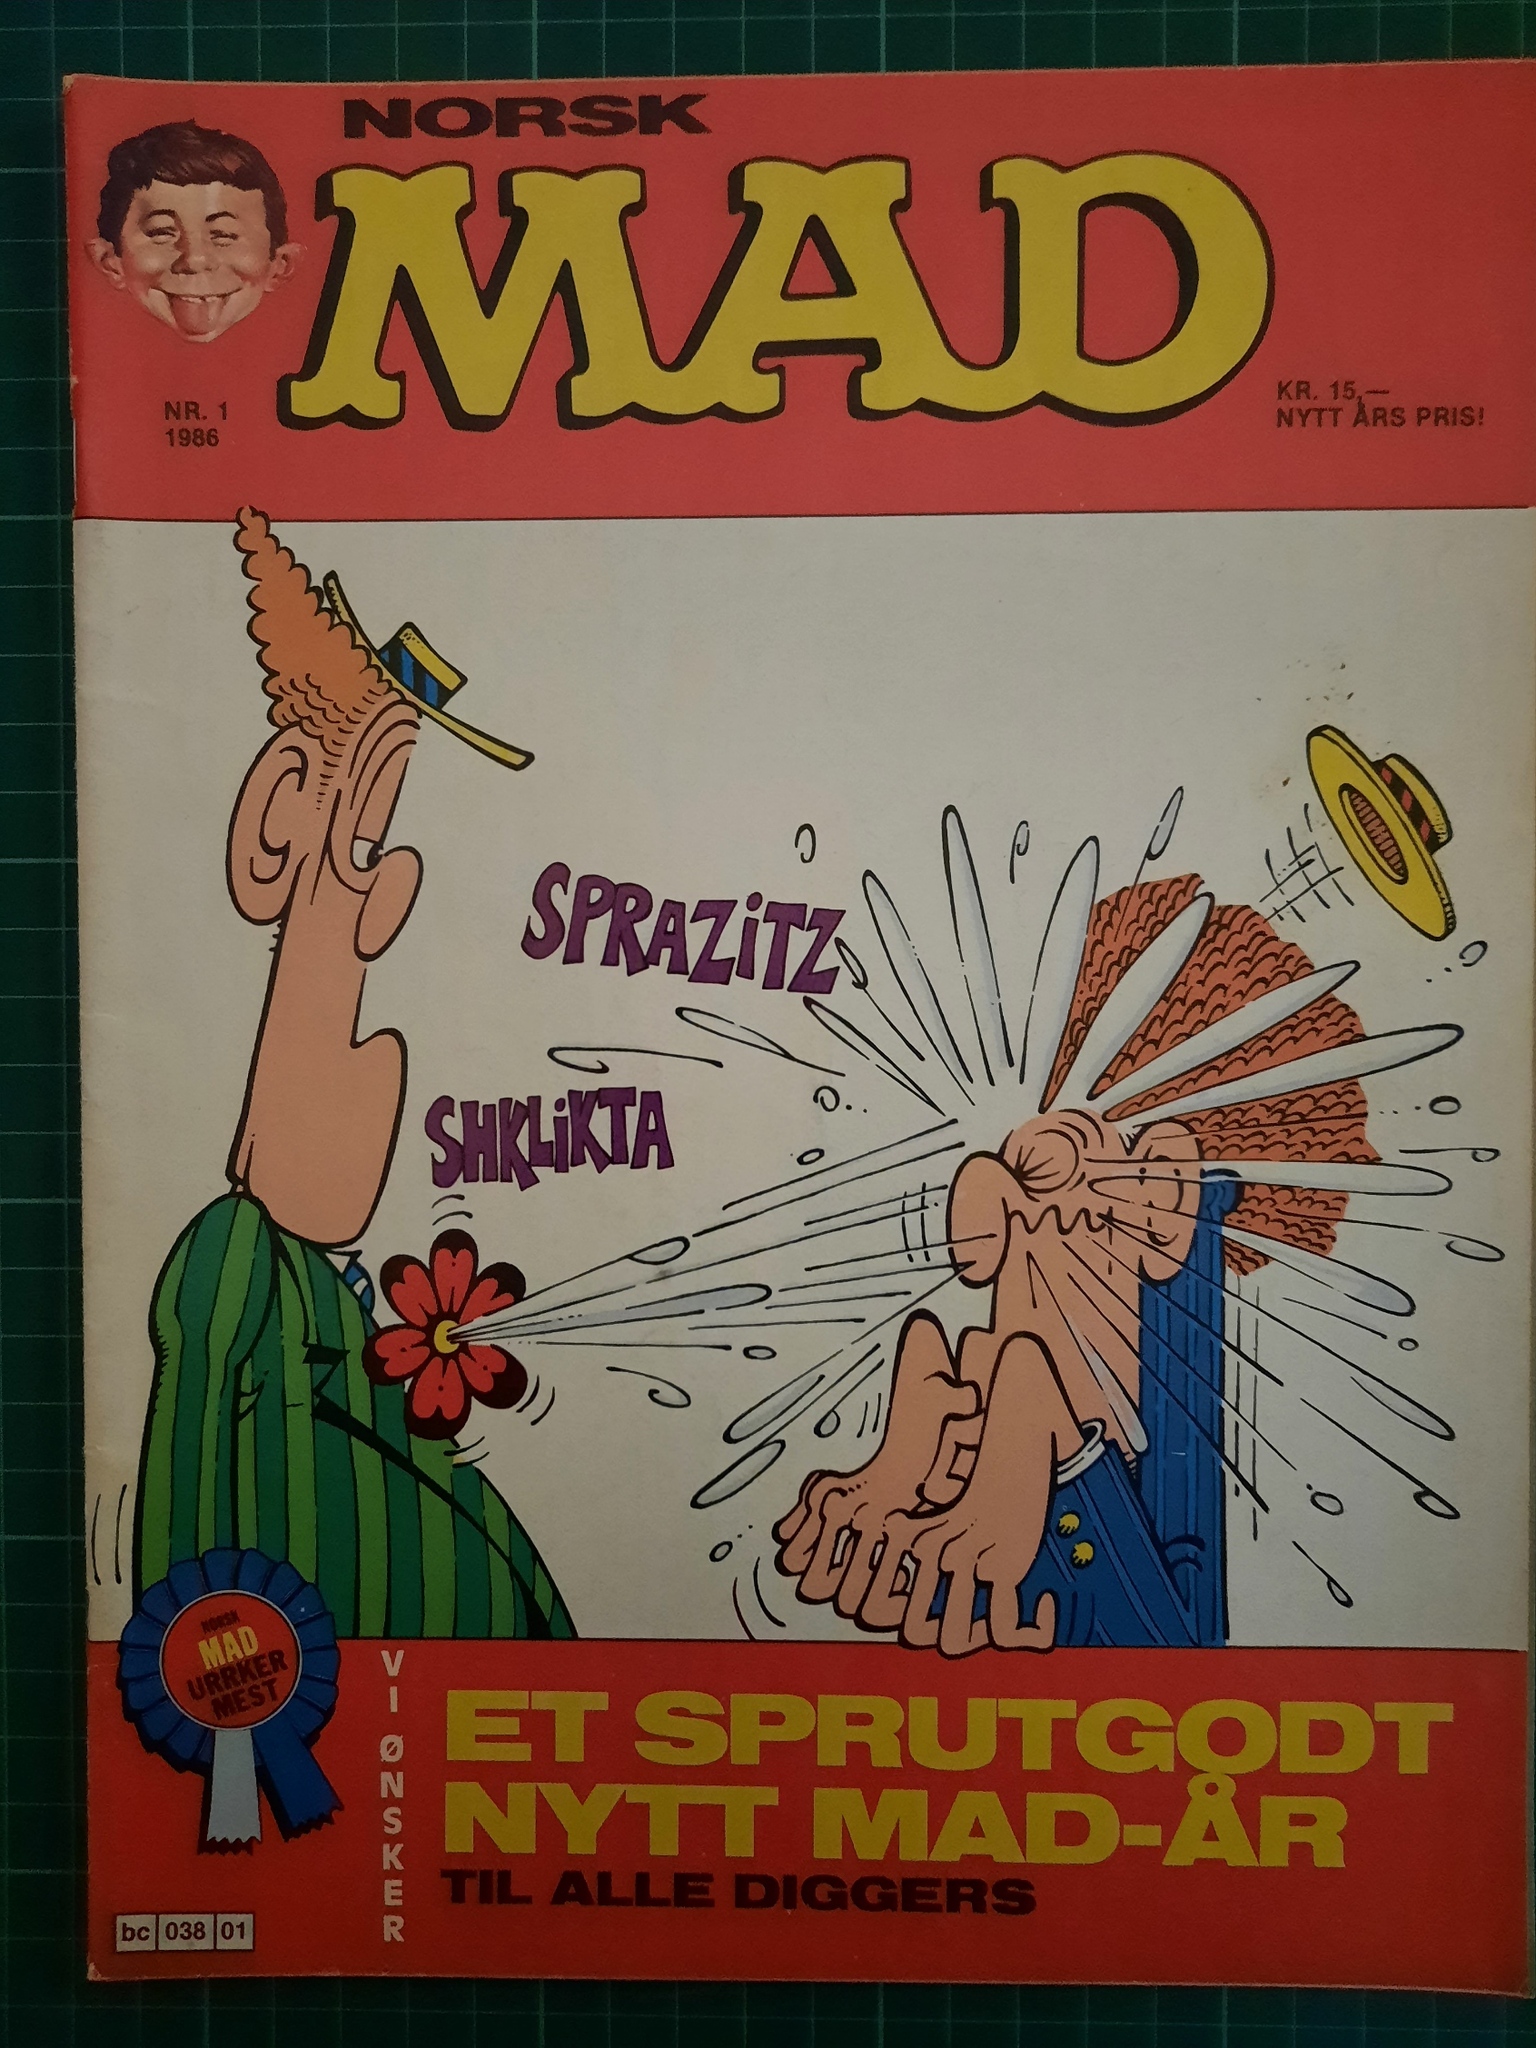 Mad 1986 - 01